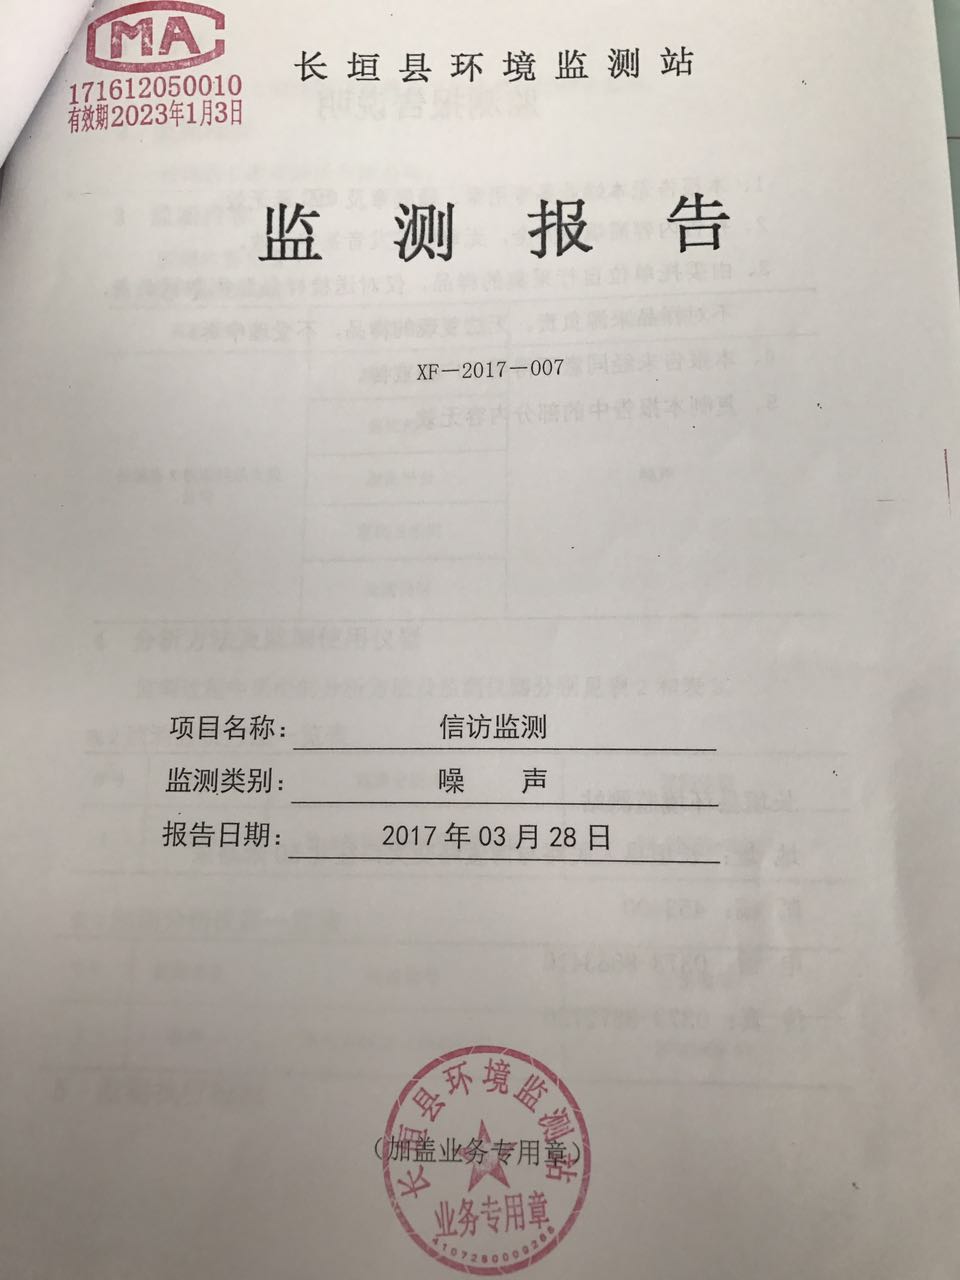 附:长垣县环境监测站监测报告             